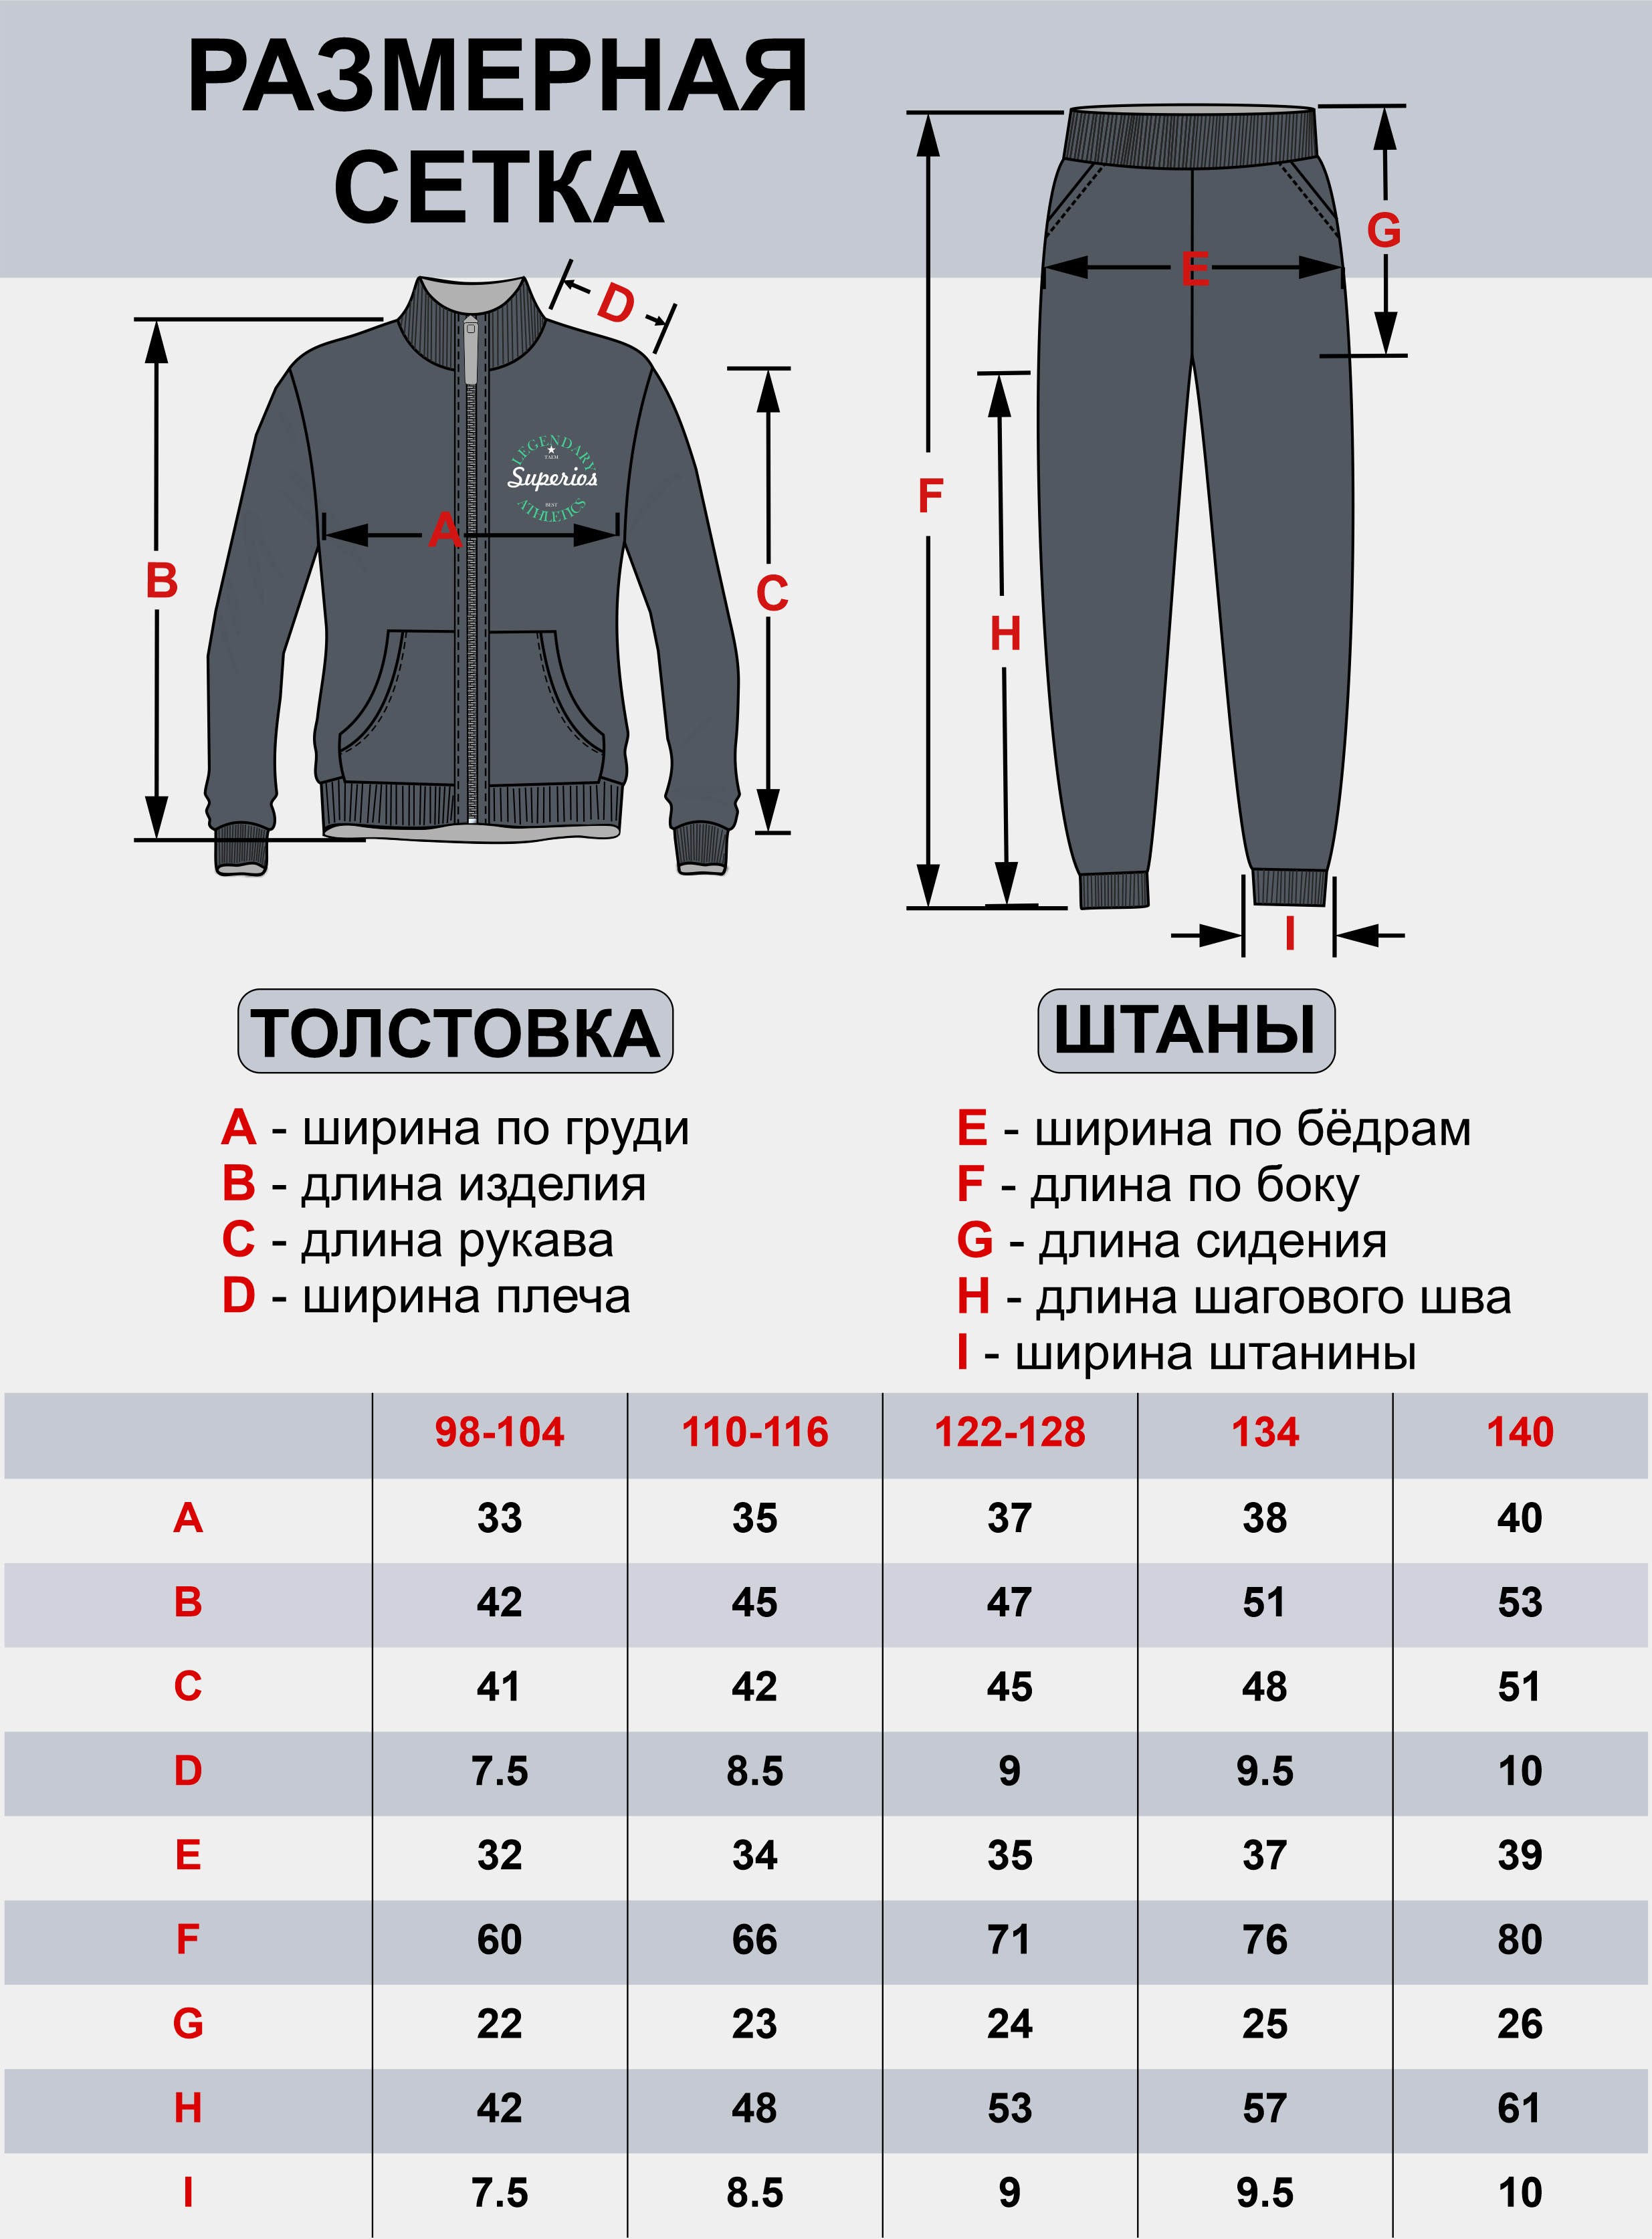 Спортивный костюм Утенок к-603 т.серый - фото 20